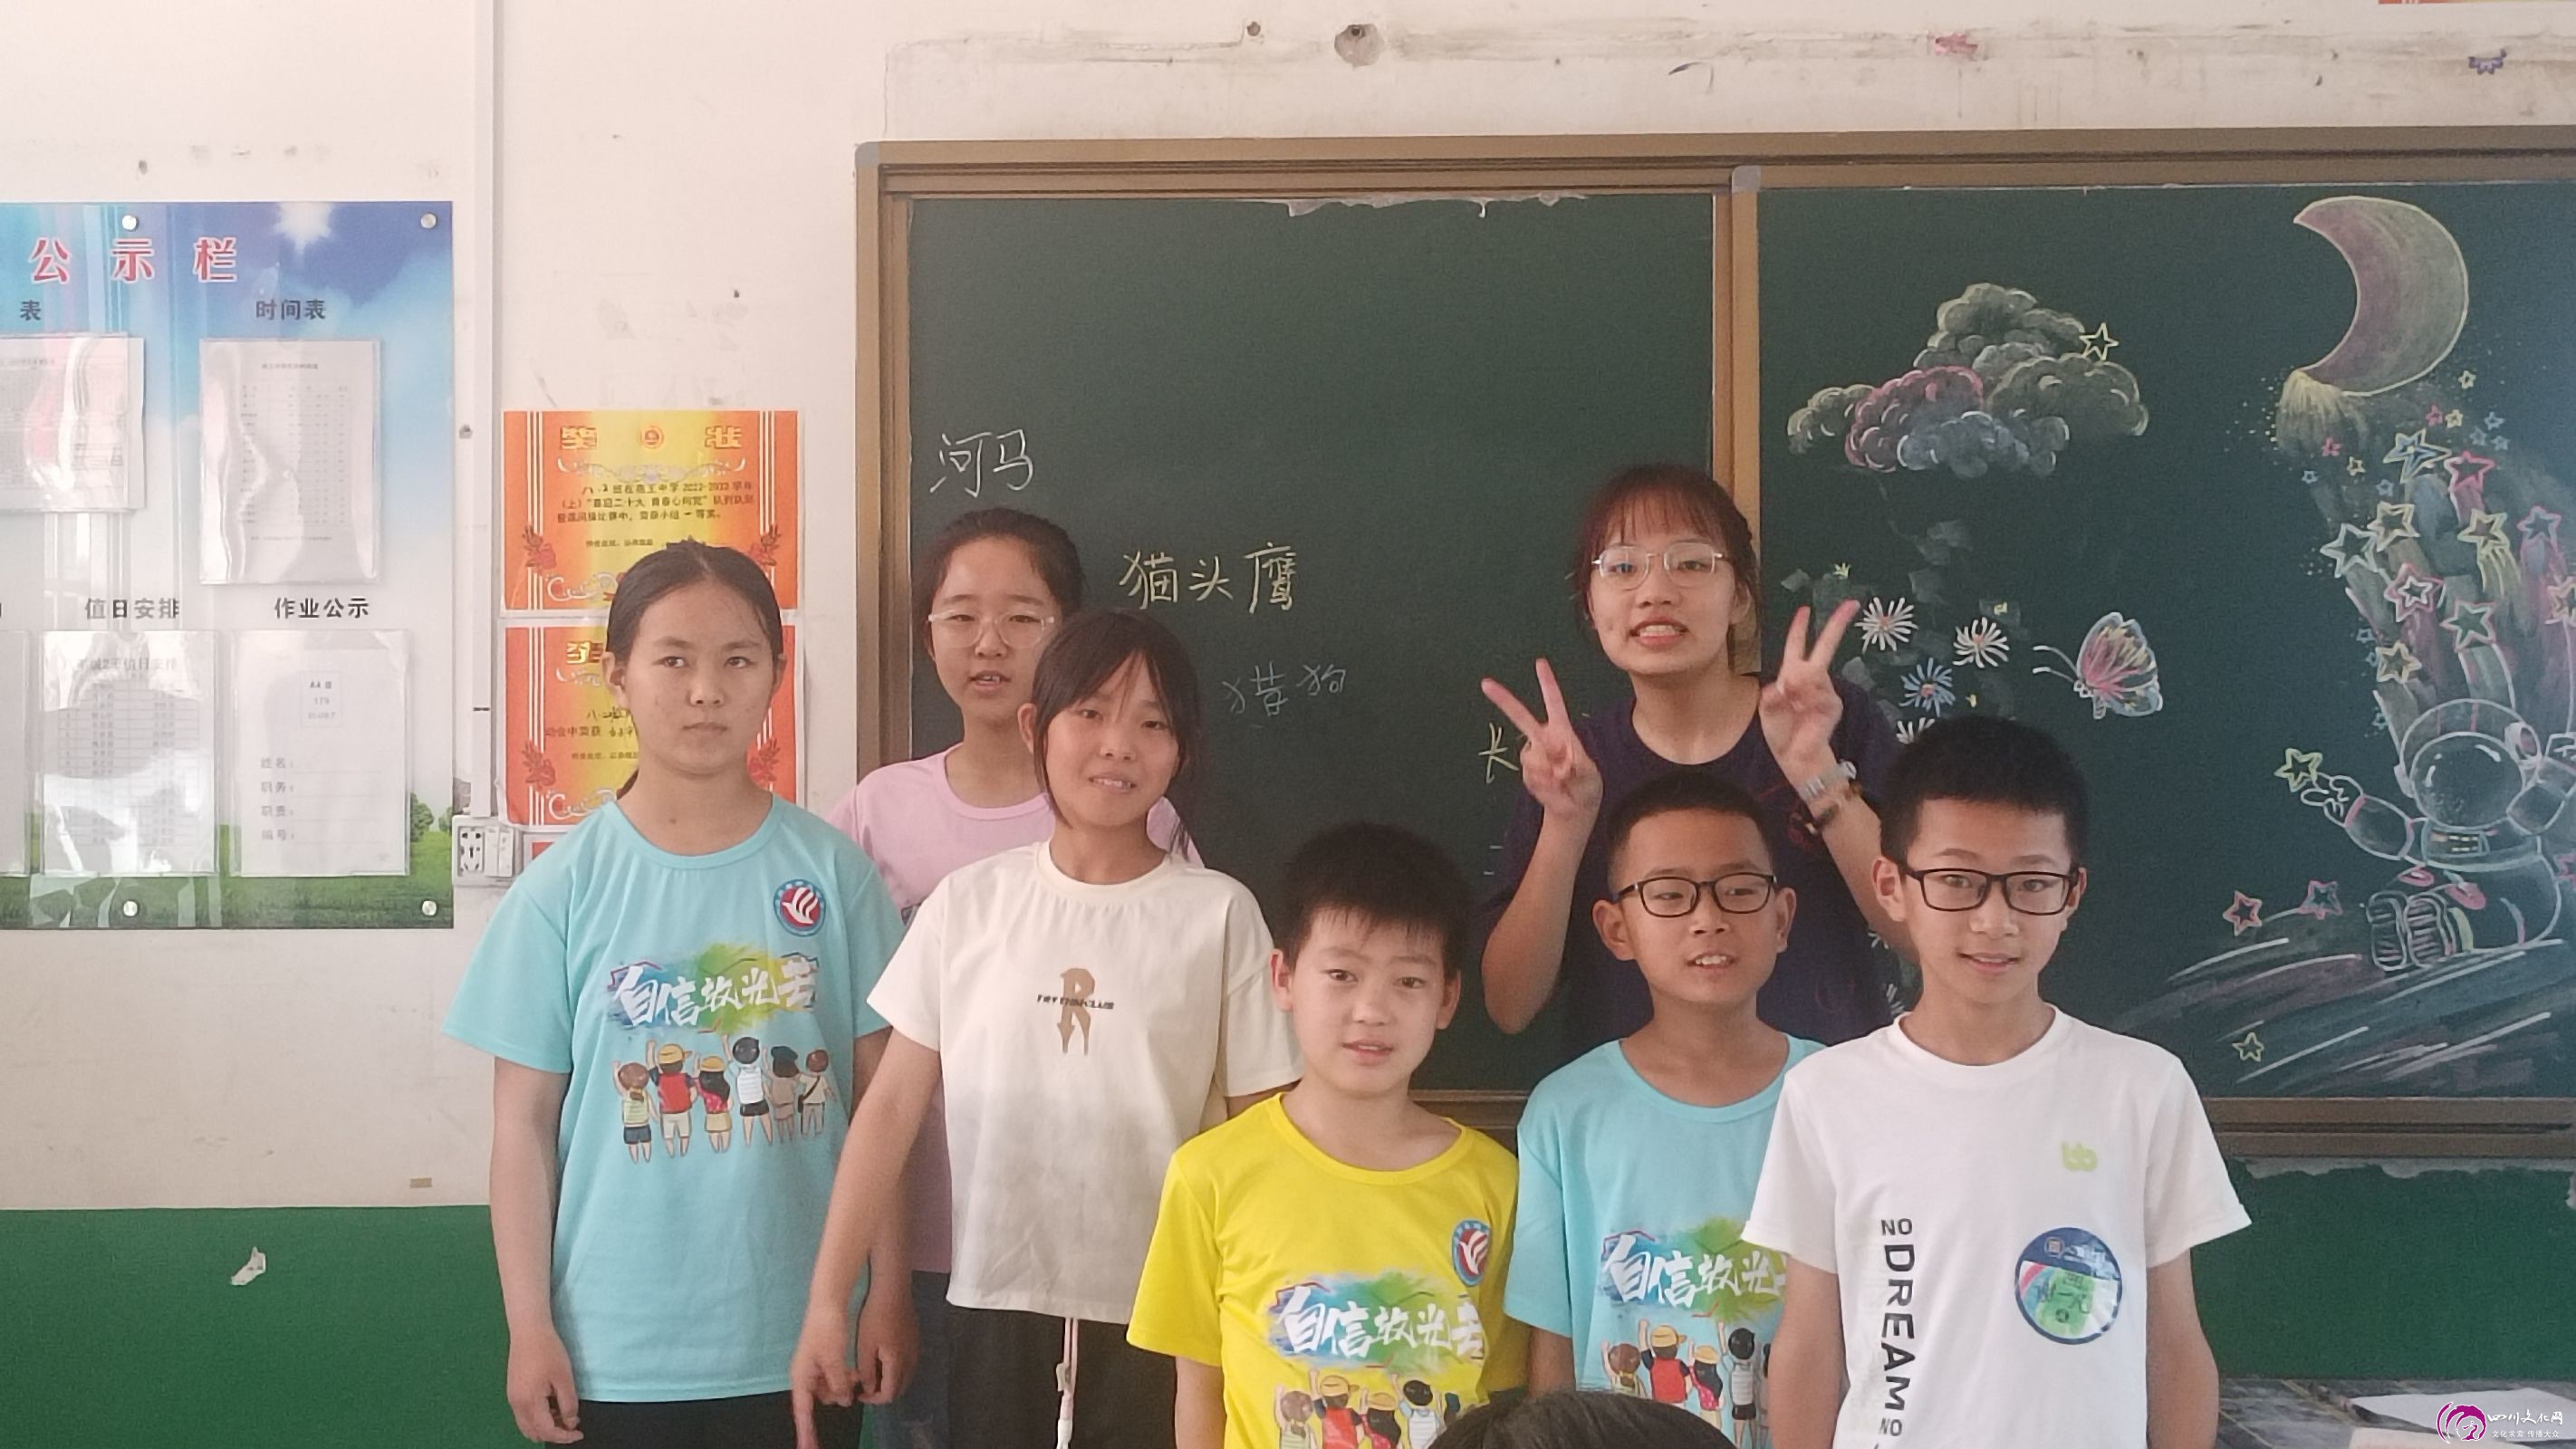 图1为小组轮流发言后志愿者与孩子们合照  四川文化网通讯员  邓梅  摄